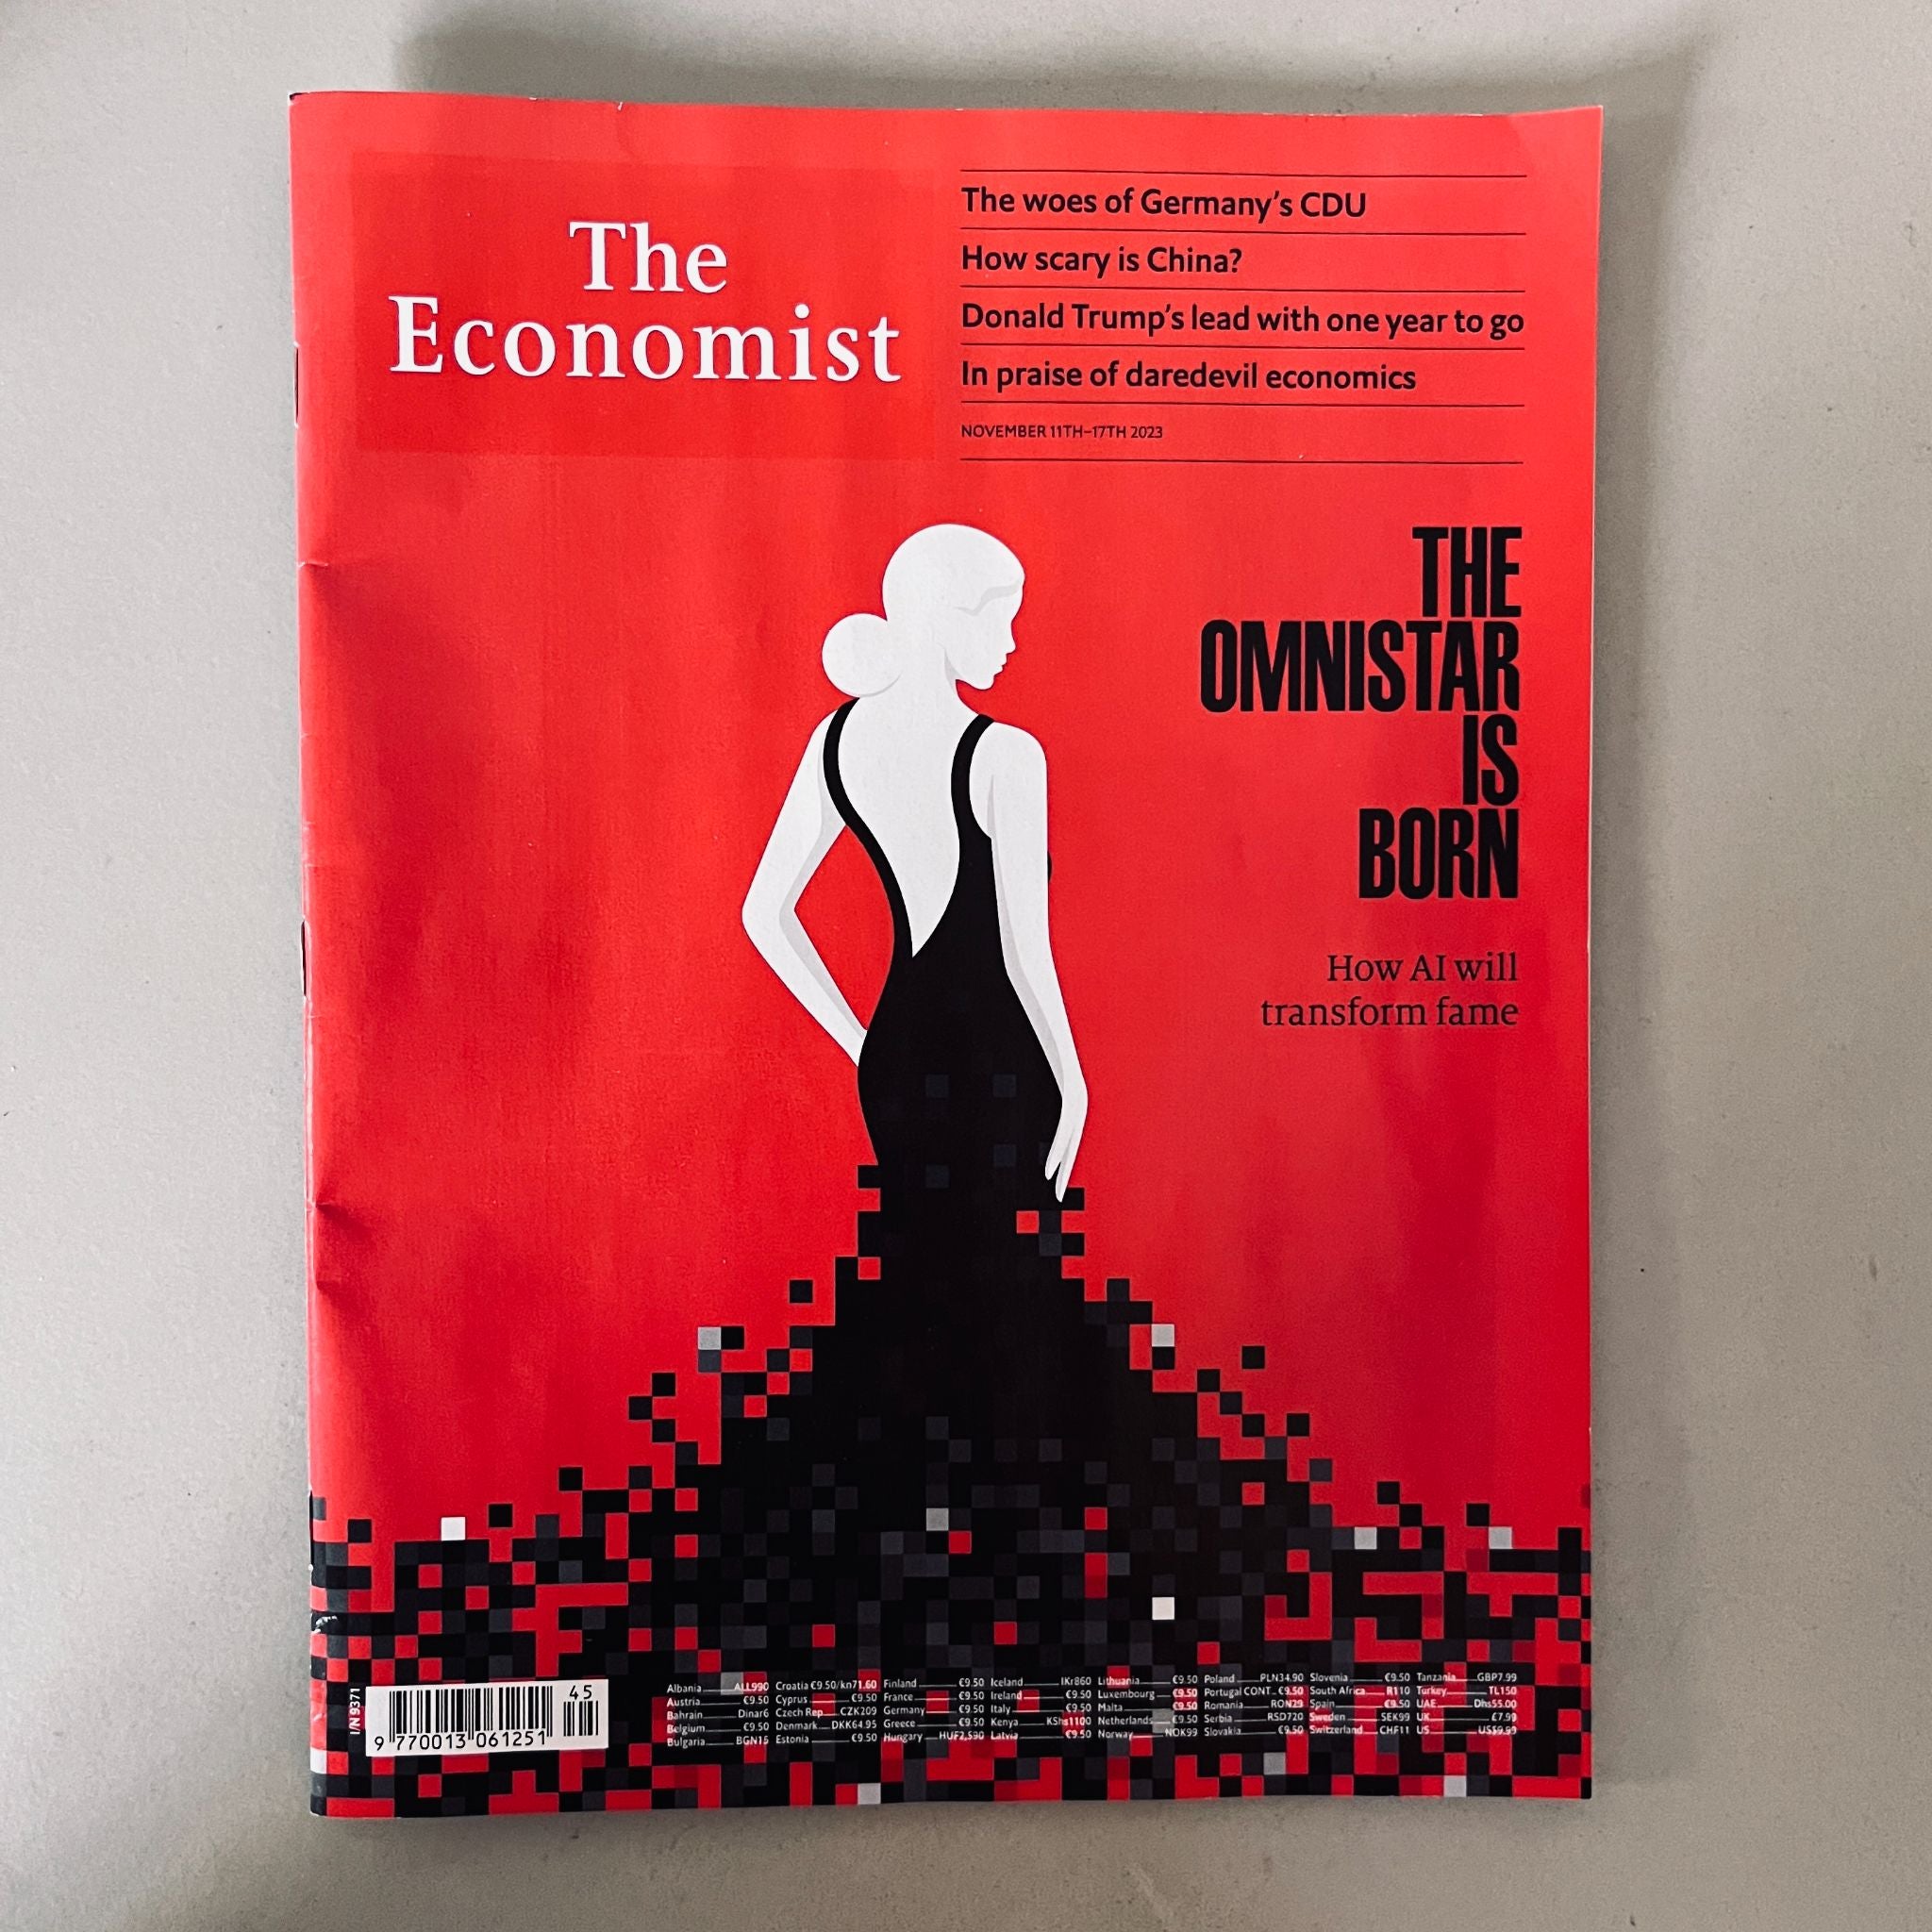 The Economist Magazine, issue #9371